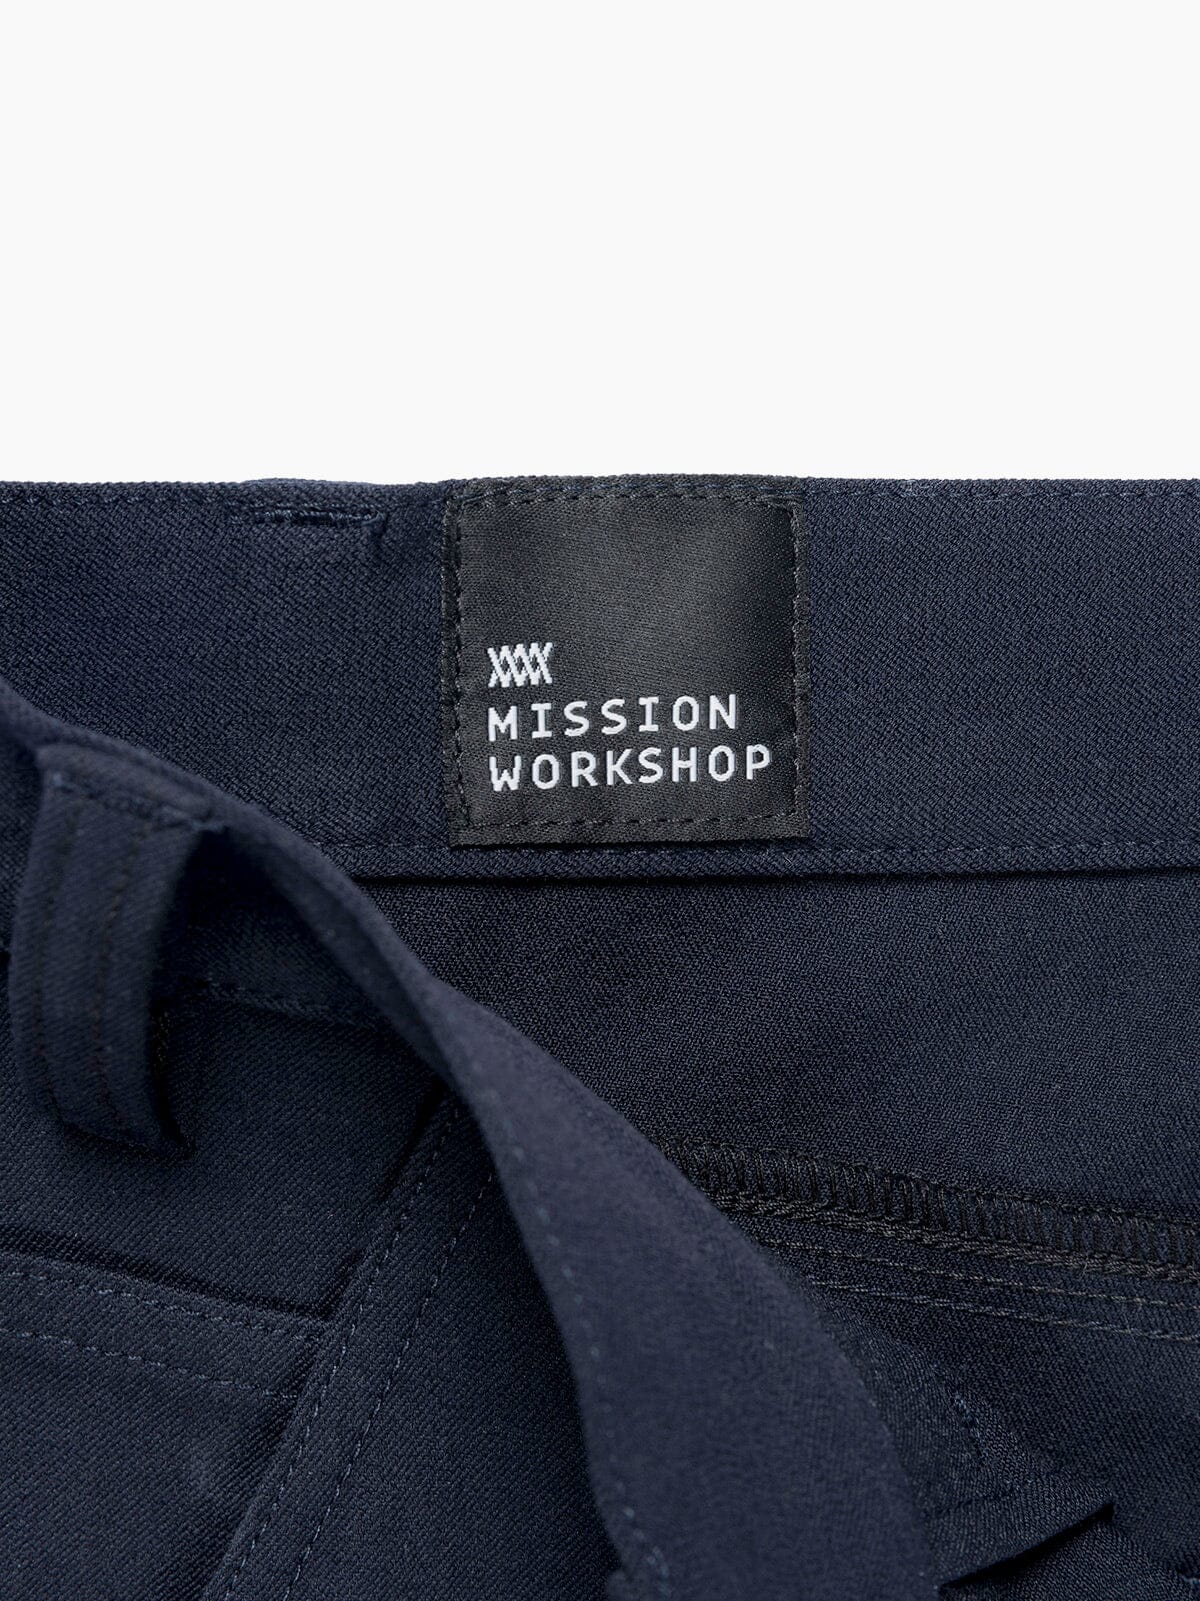 Paragon by Mission Workshop - Wetterfeste Taschen und technische Bekleidung - San Francisco & Los Angeles - Für die Ewigkeit gebaut - Garantiert